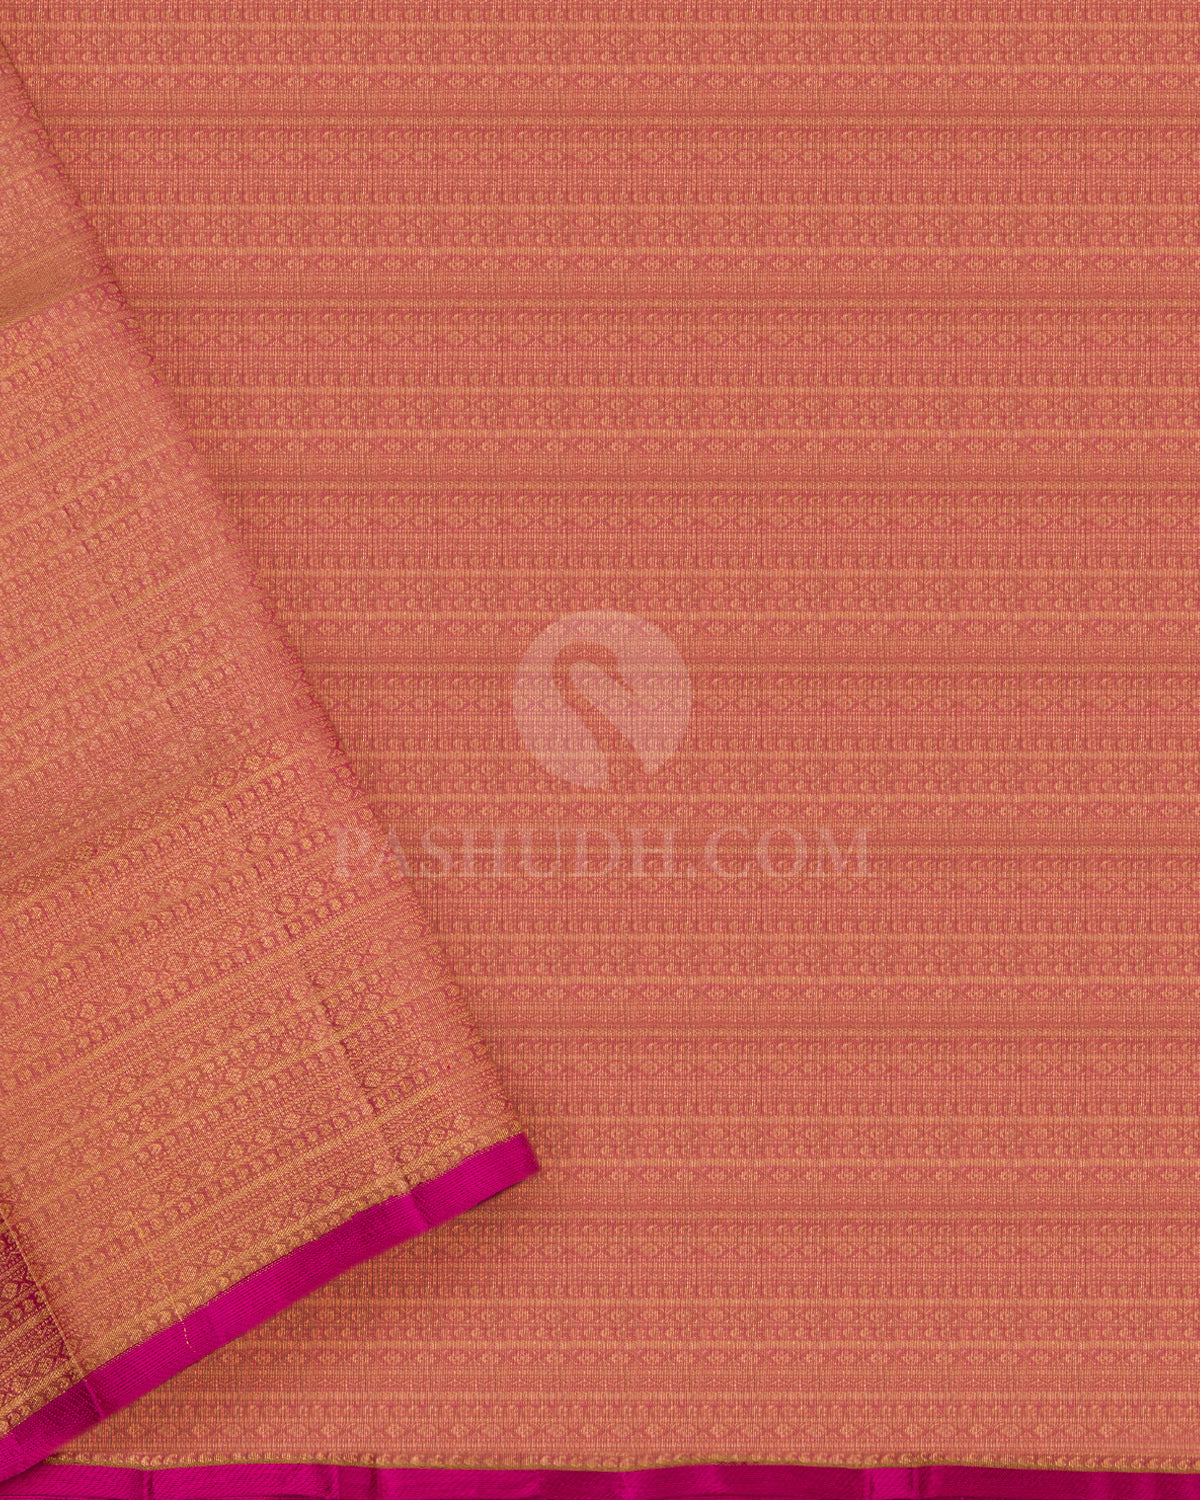 Peachy Pink and Cream Kanjivaram Saree - S582- View 4